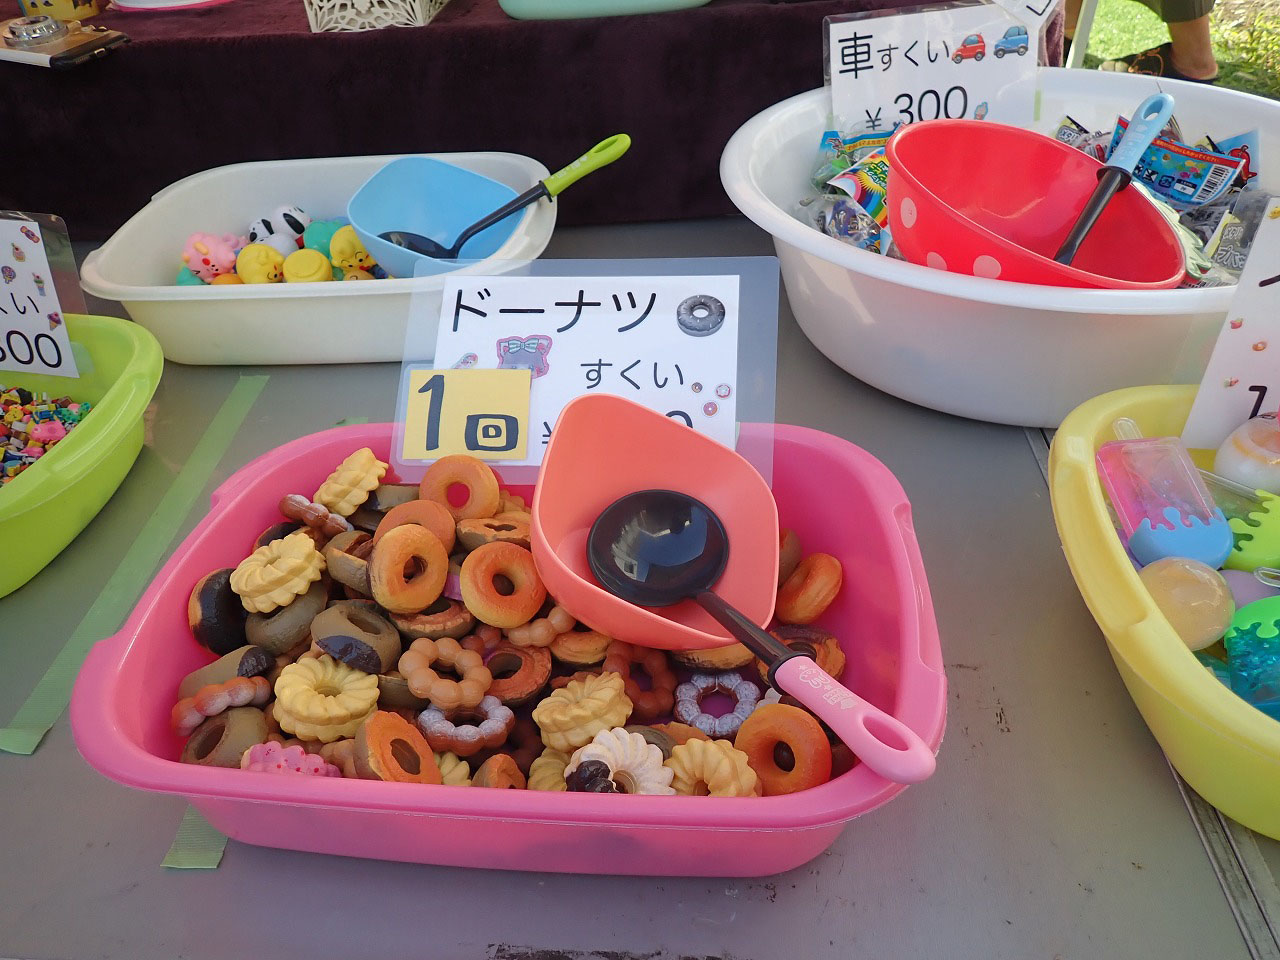 龜屋 元町店』の奥で開催されている「おもちゃすくい」